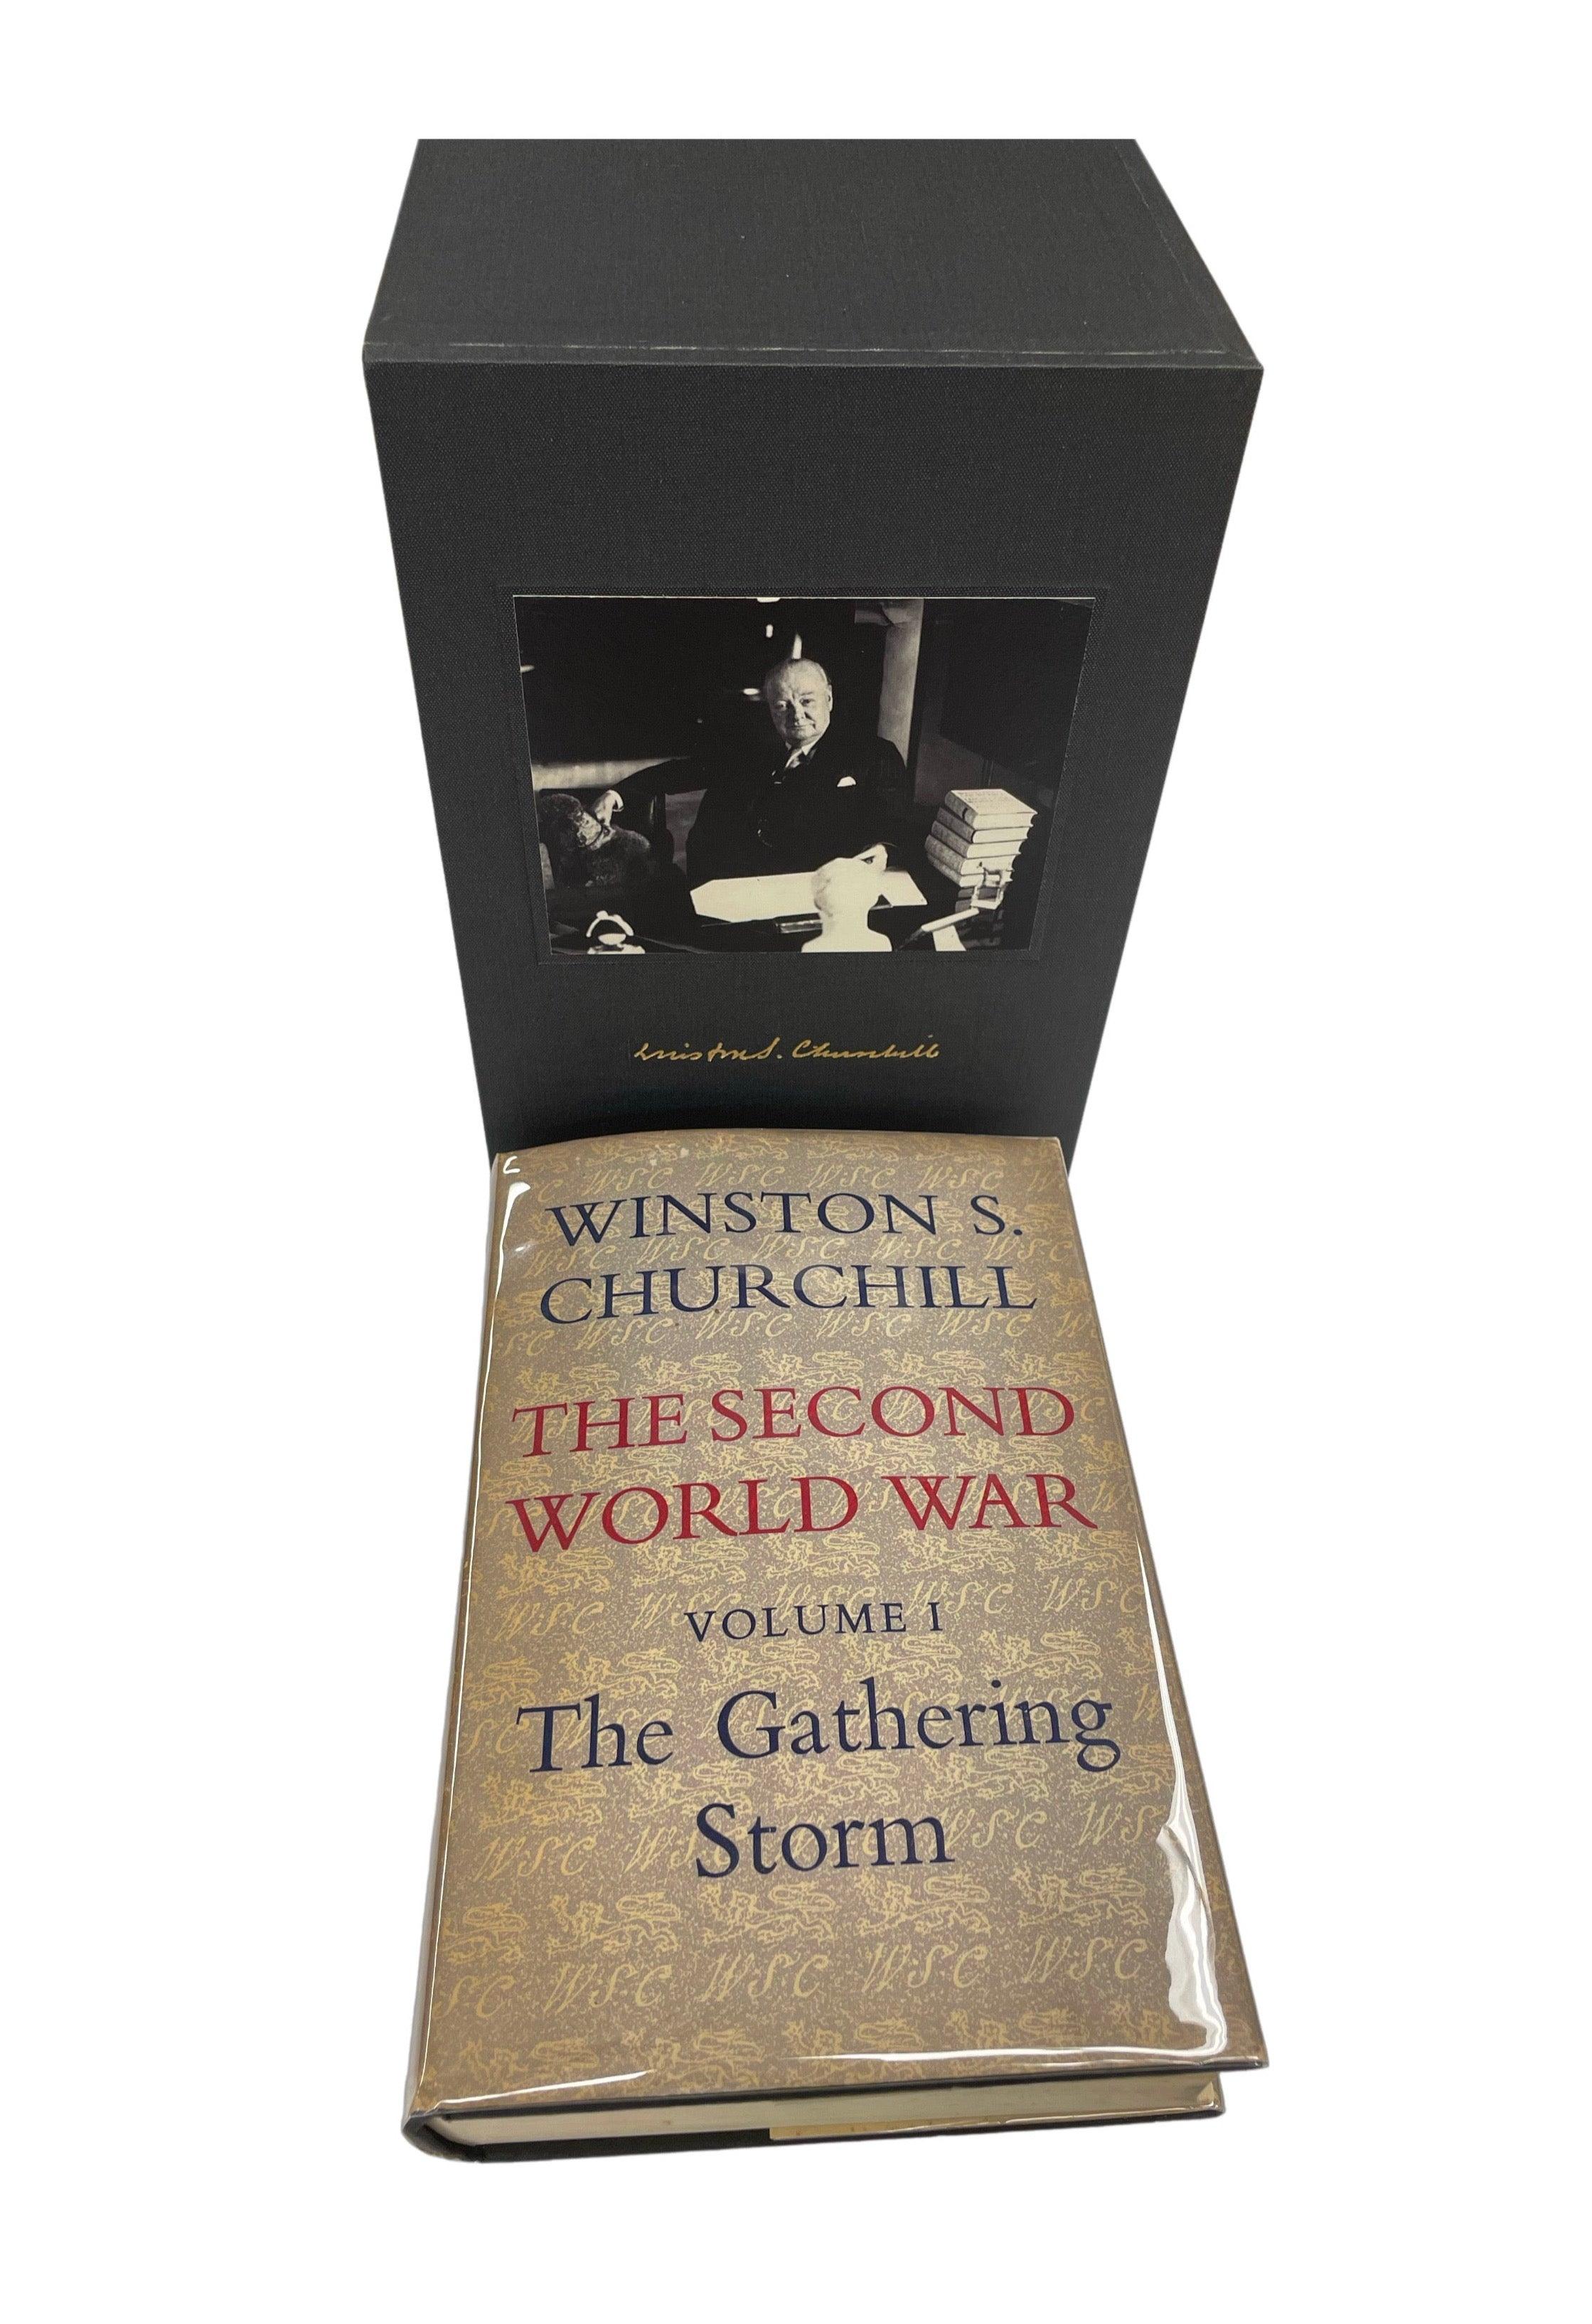 Churchill, Winston, La Seconde Guerre mondiale. Londres, 1948-1953 : Cassell & Co. Ltd. Toutes les premières éditions, premiers numéros. 6 volumes. Tous les volumes sont en jaquettes d'origine et couvertures rigides avec un nouvel étui en tissu